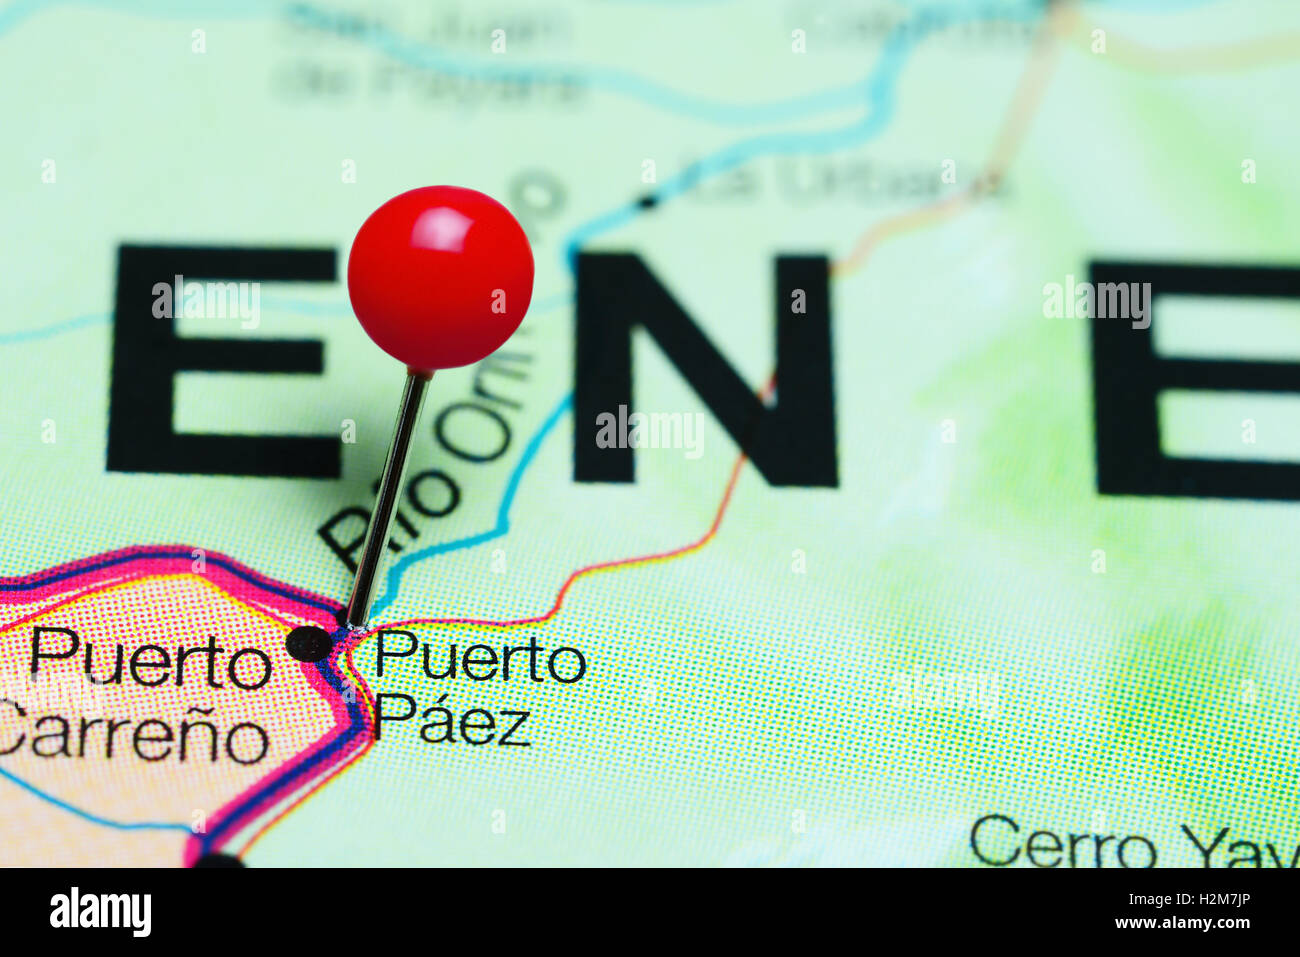 Puerto Páez anclado en un mapa de Venezuela Fotografía de stock - Alamy